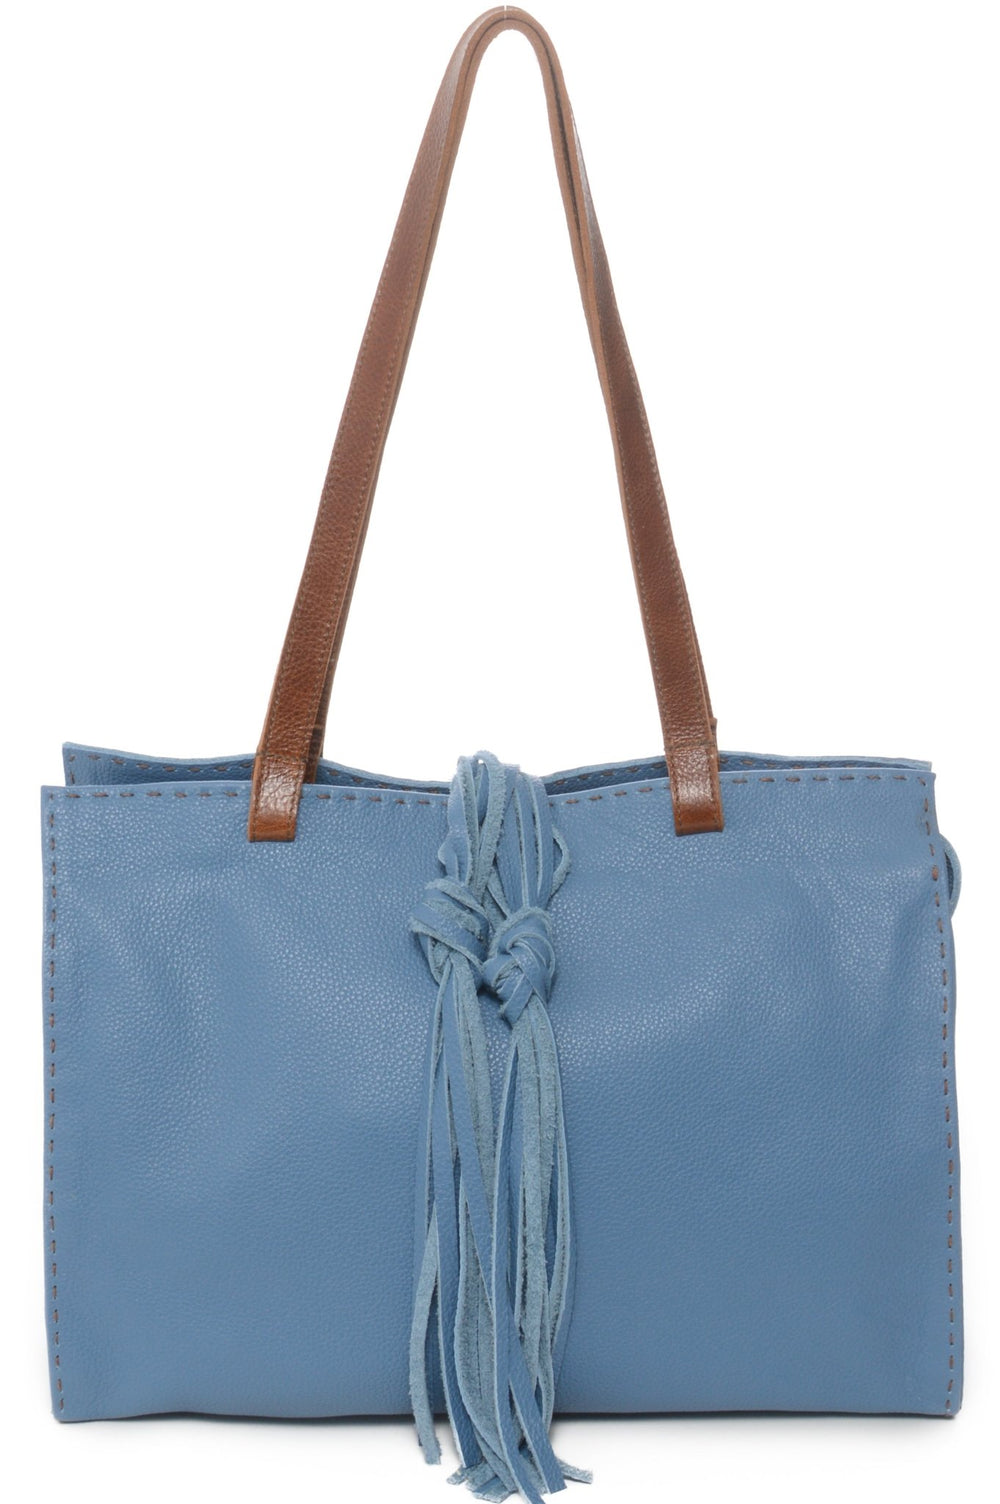 CARMEL Aqua Blue - Carla Mancini Handbags